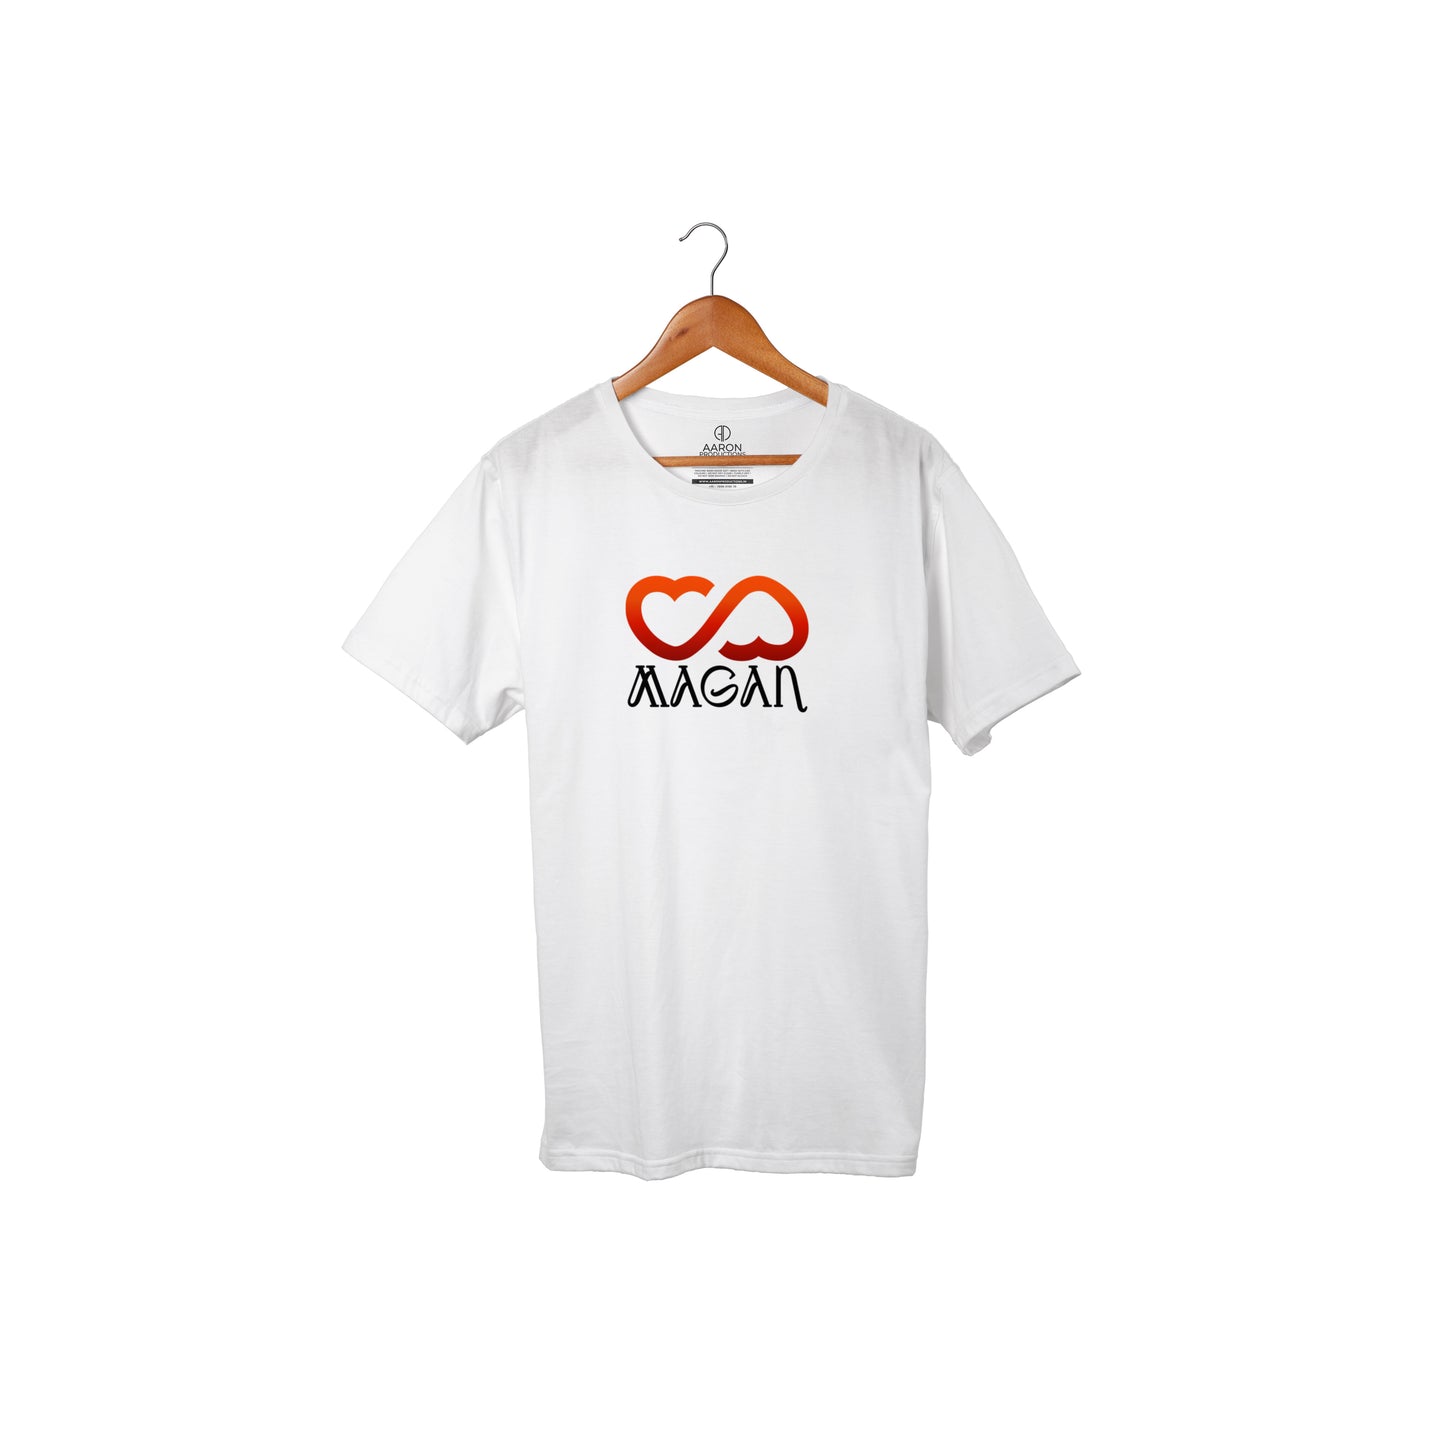 06 Magan - Jaago Boys tshirt